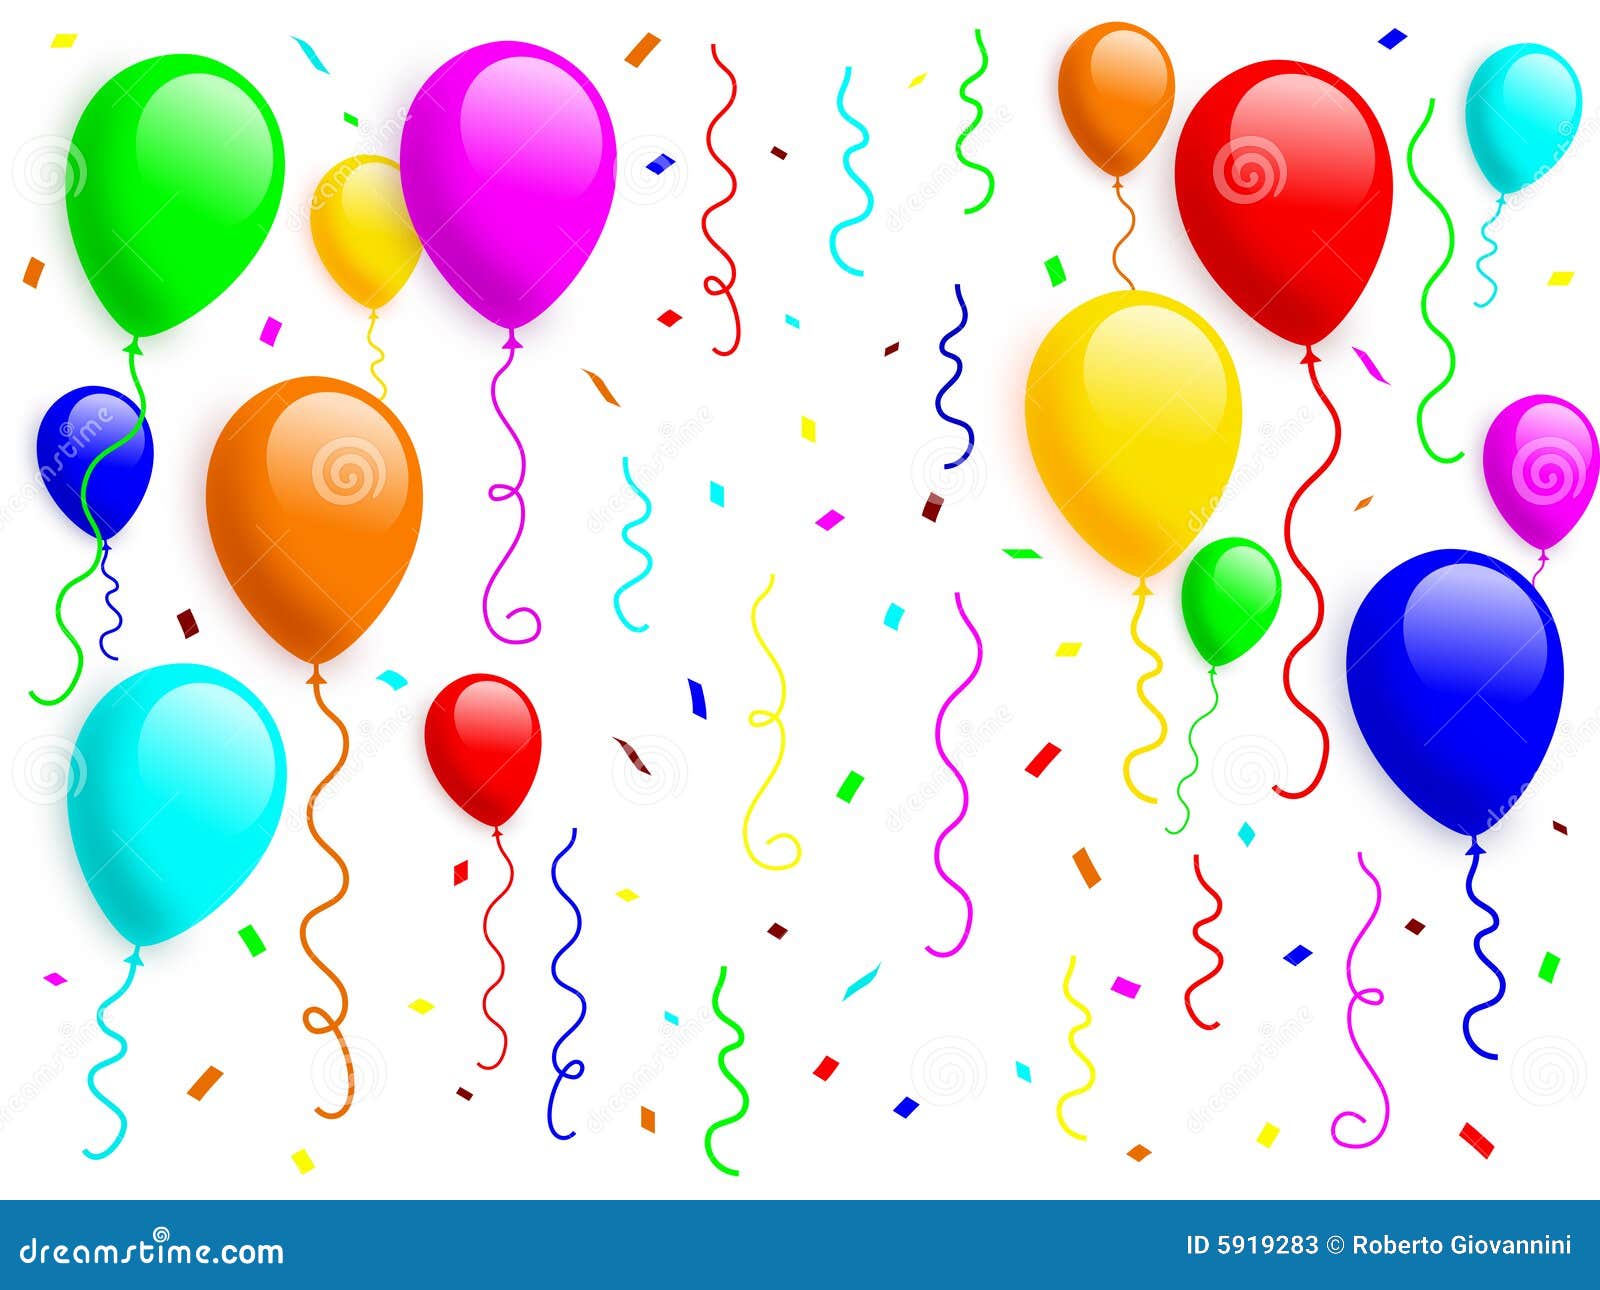 Confetti Balloons Stock Illustrations – 36,419 Confetti Balloons Stock  Illustrations, Vectors & Clipart - Dreamstime